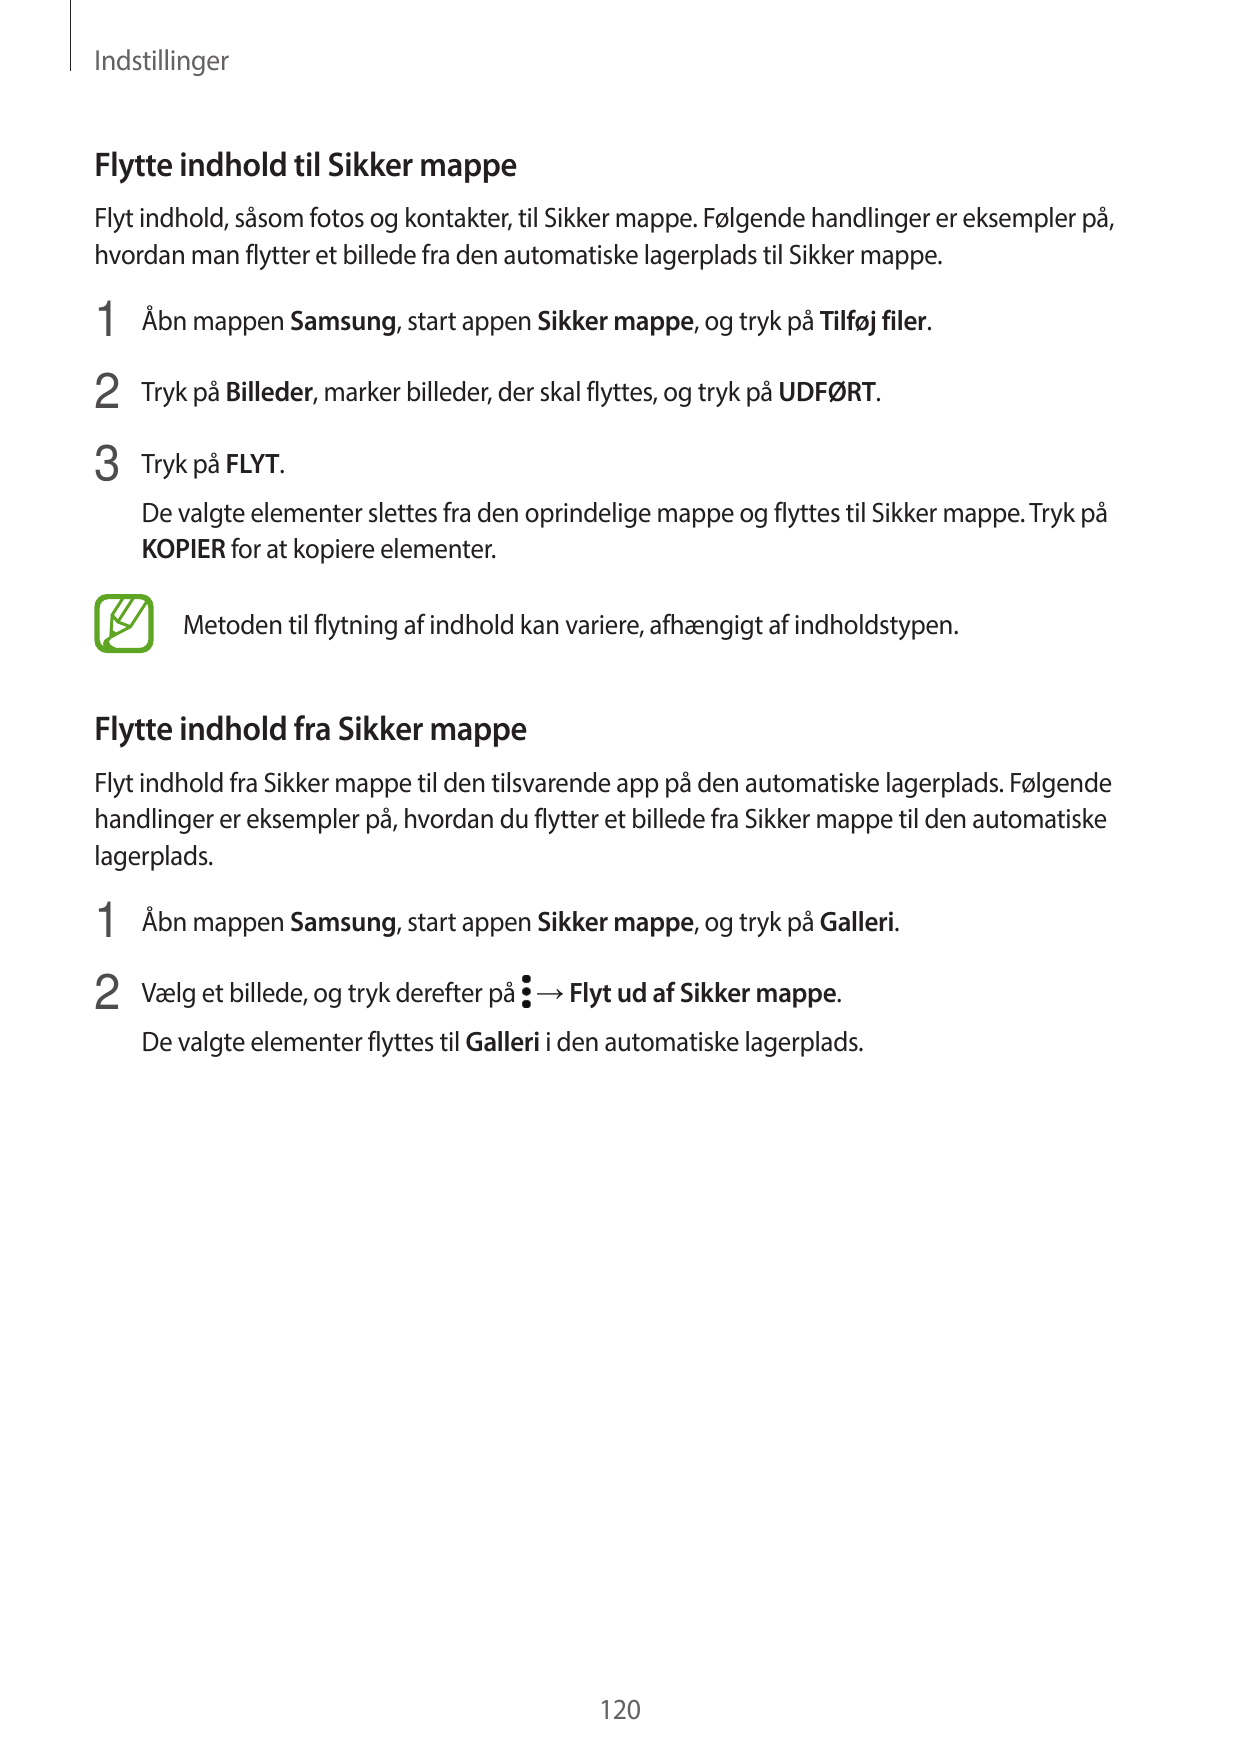 IndstillingerFlytte indhold til Sikker mappeFlyt indhold, såsom fotos og kontakter, til Sikker mappe. Følgende handlinger er eks